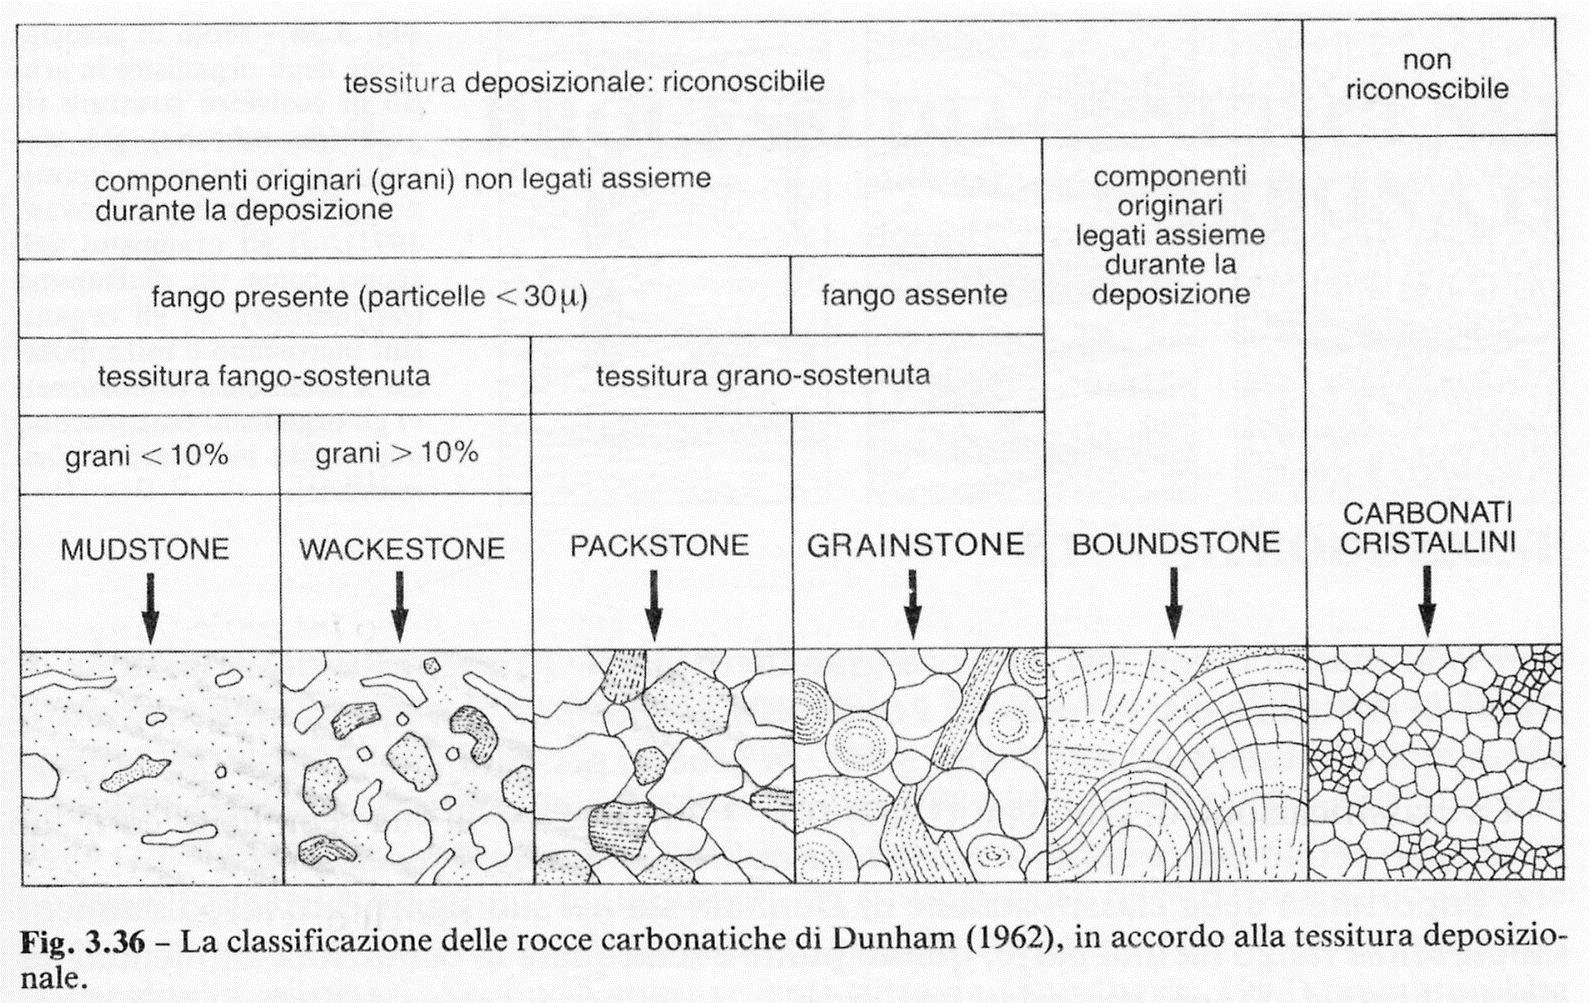 Tre le grosse suddivisioni: calcari fango-sostenuti (matrix-supported) (PS per Dunham la micrite ha dimensioni <20 um), grano-sostenuti (grain-supported) e apparato biologico (biologically bound).